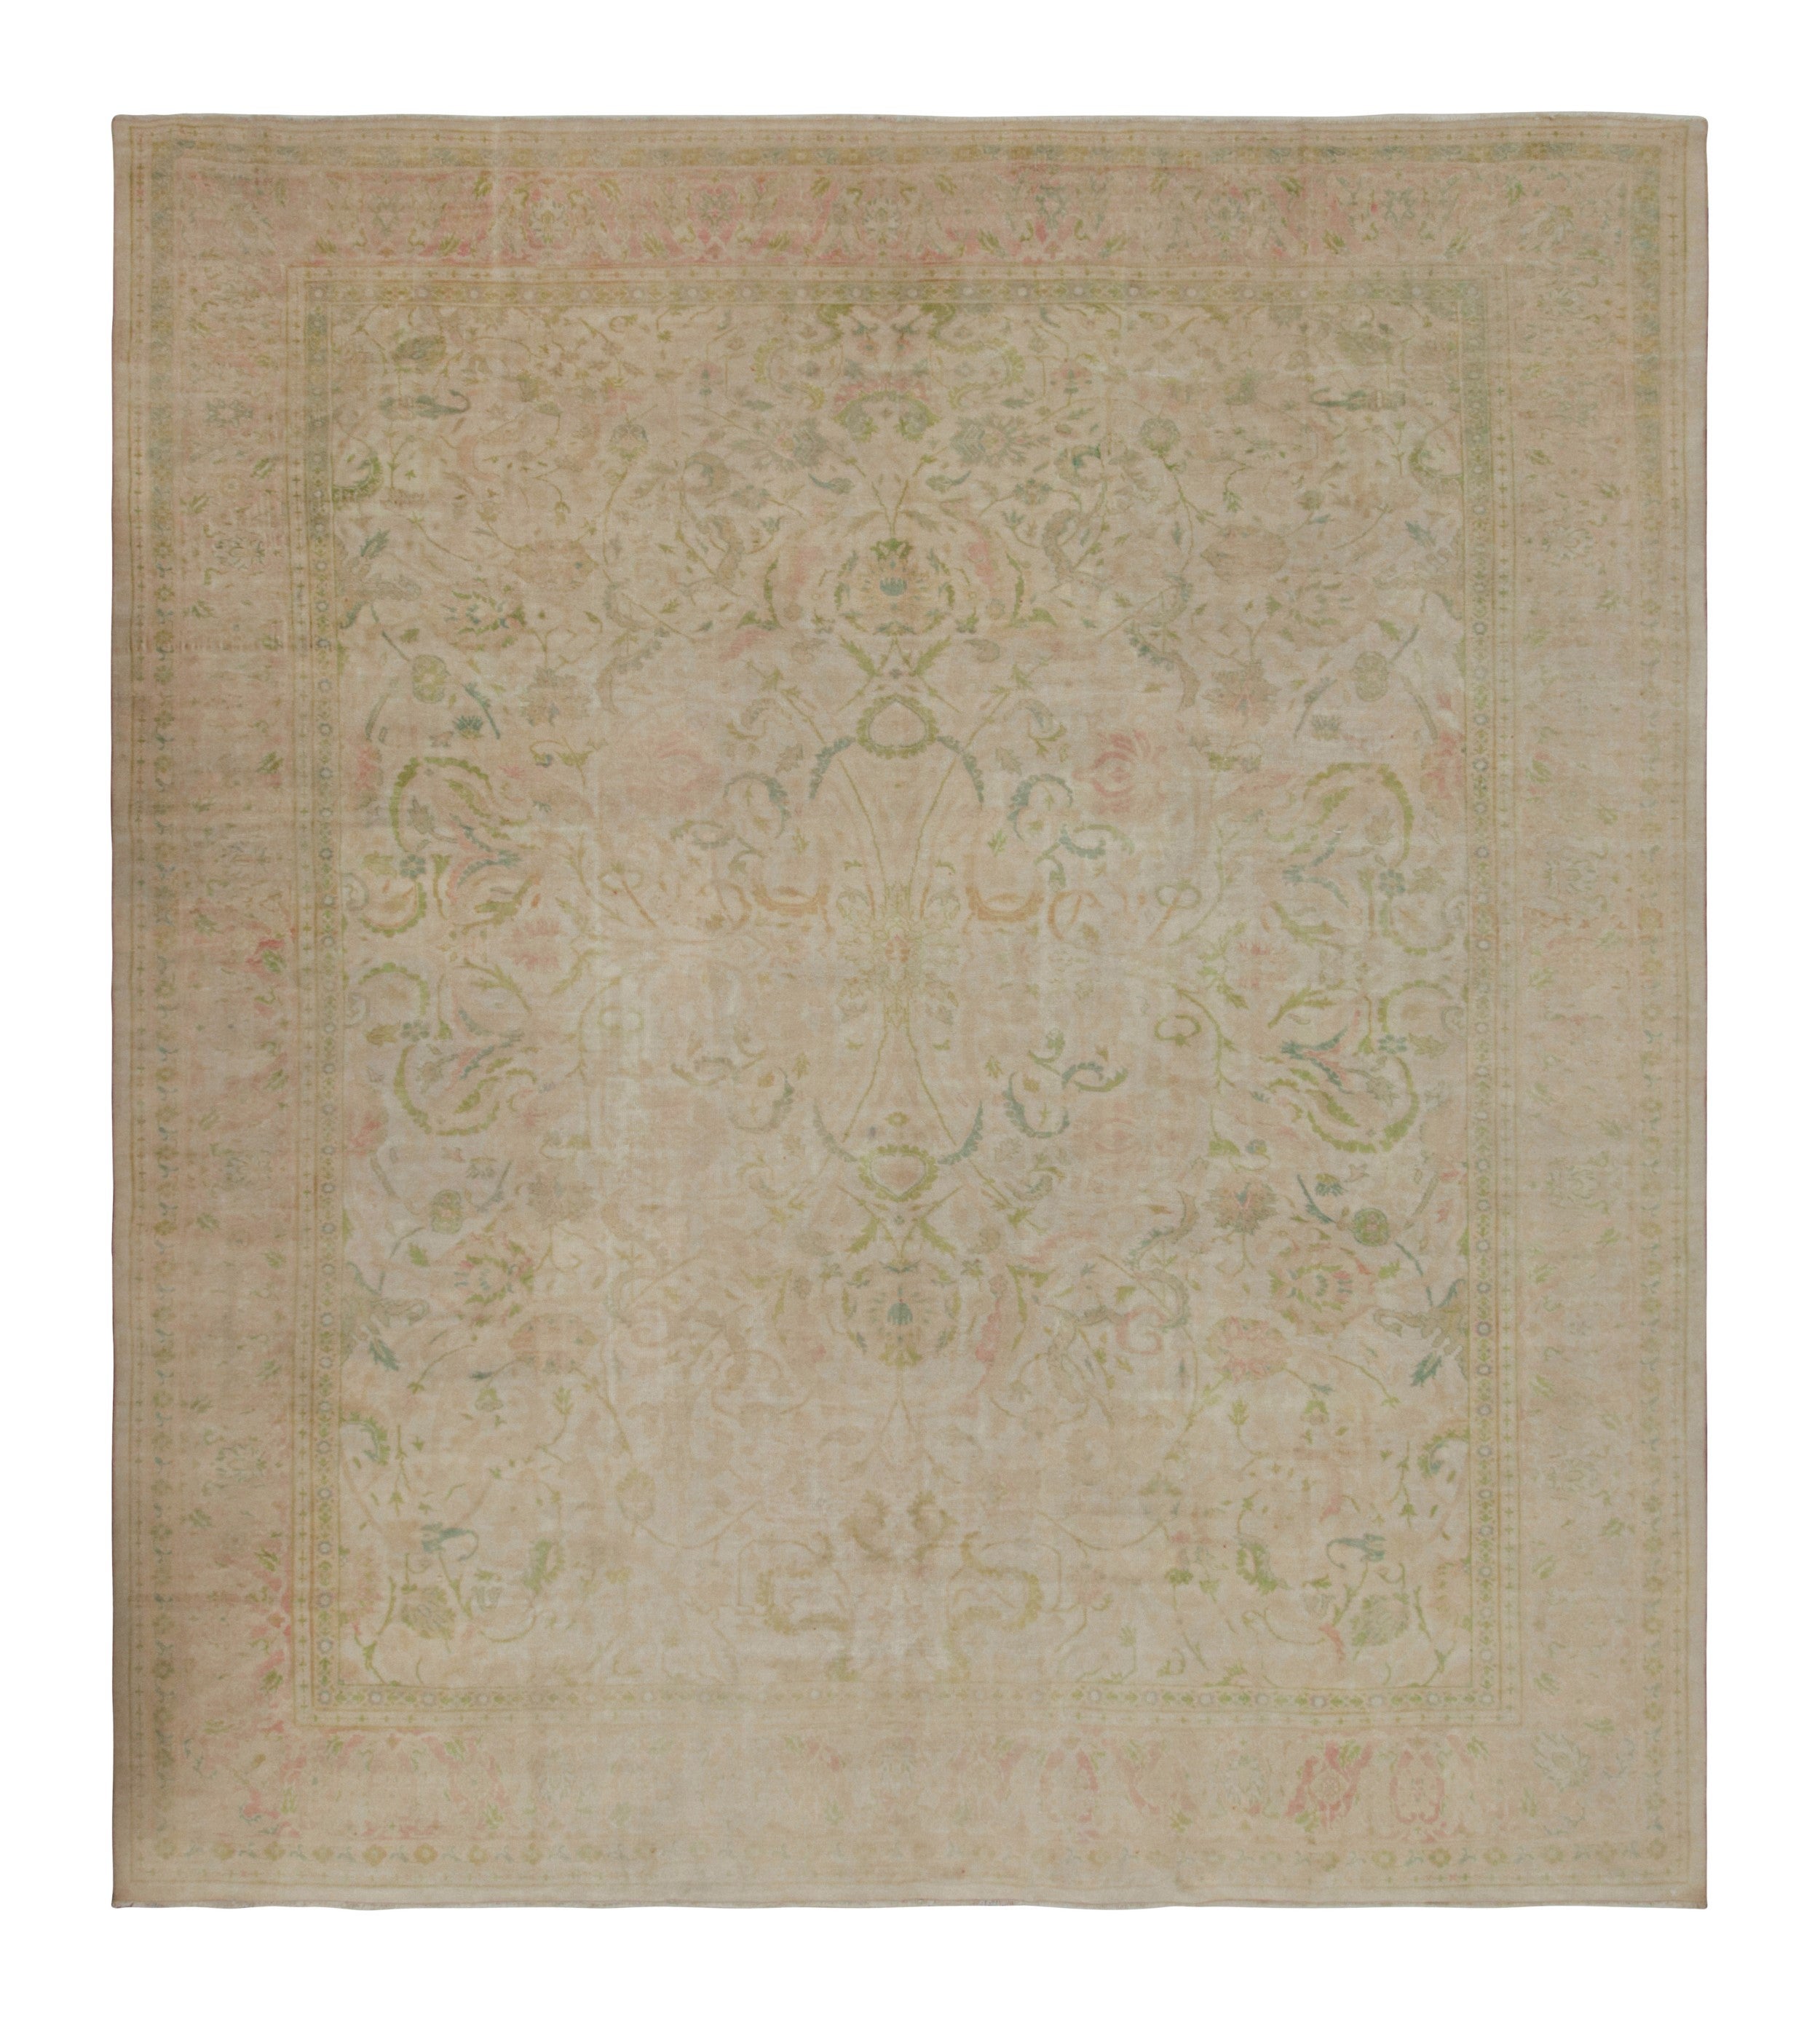 Seltener antiker Sivas-Teppich, mit rosa und grünen Blumenmustern, von Rug & Kilim